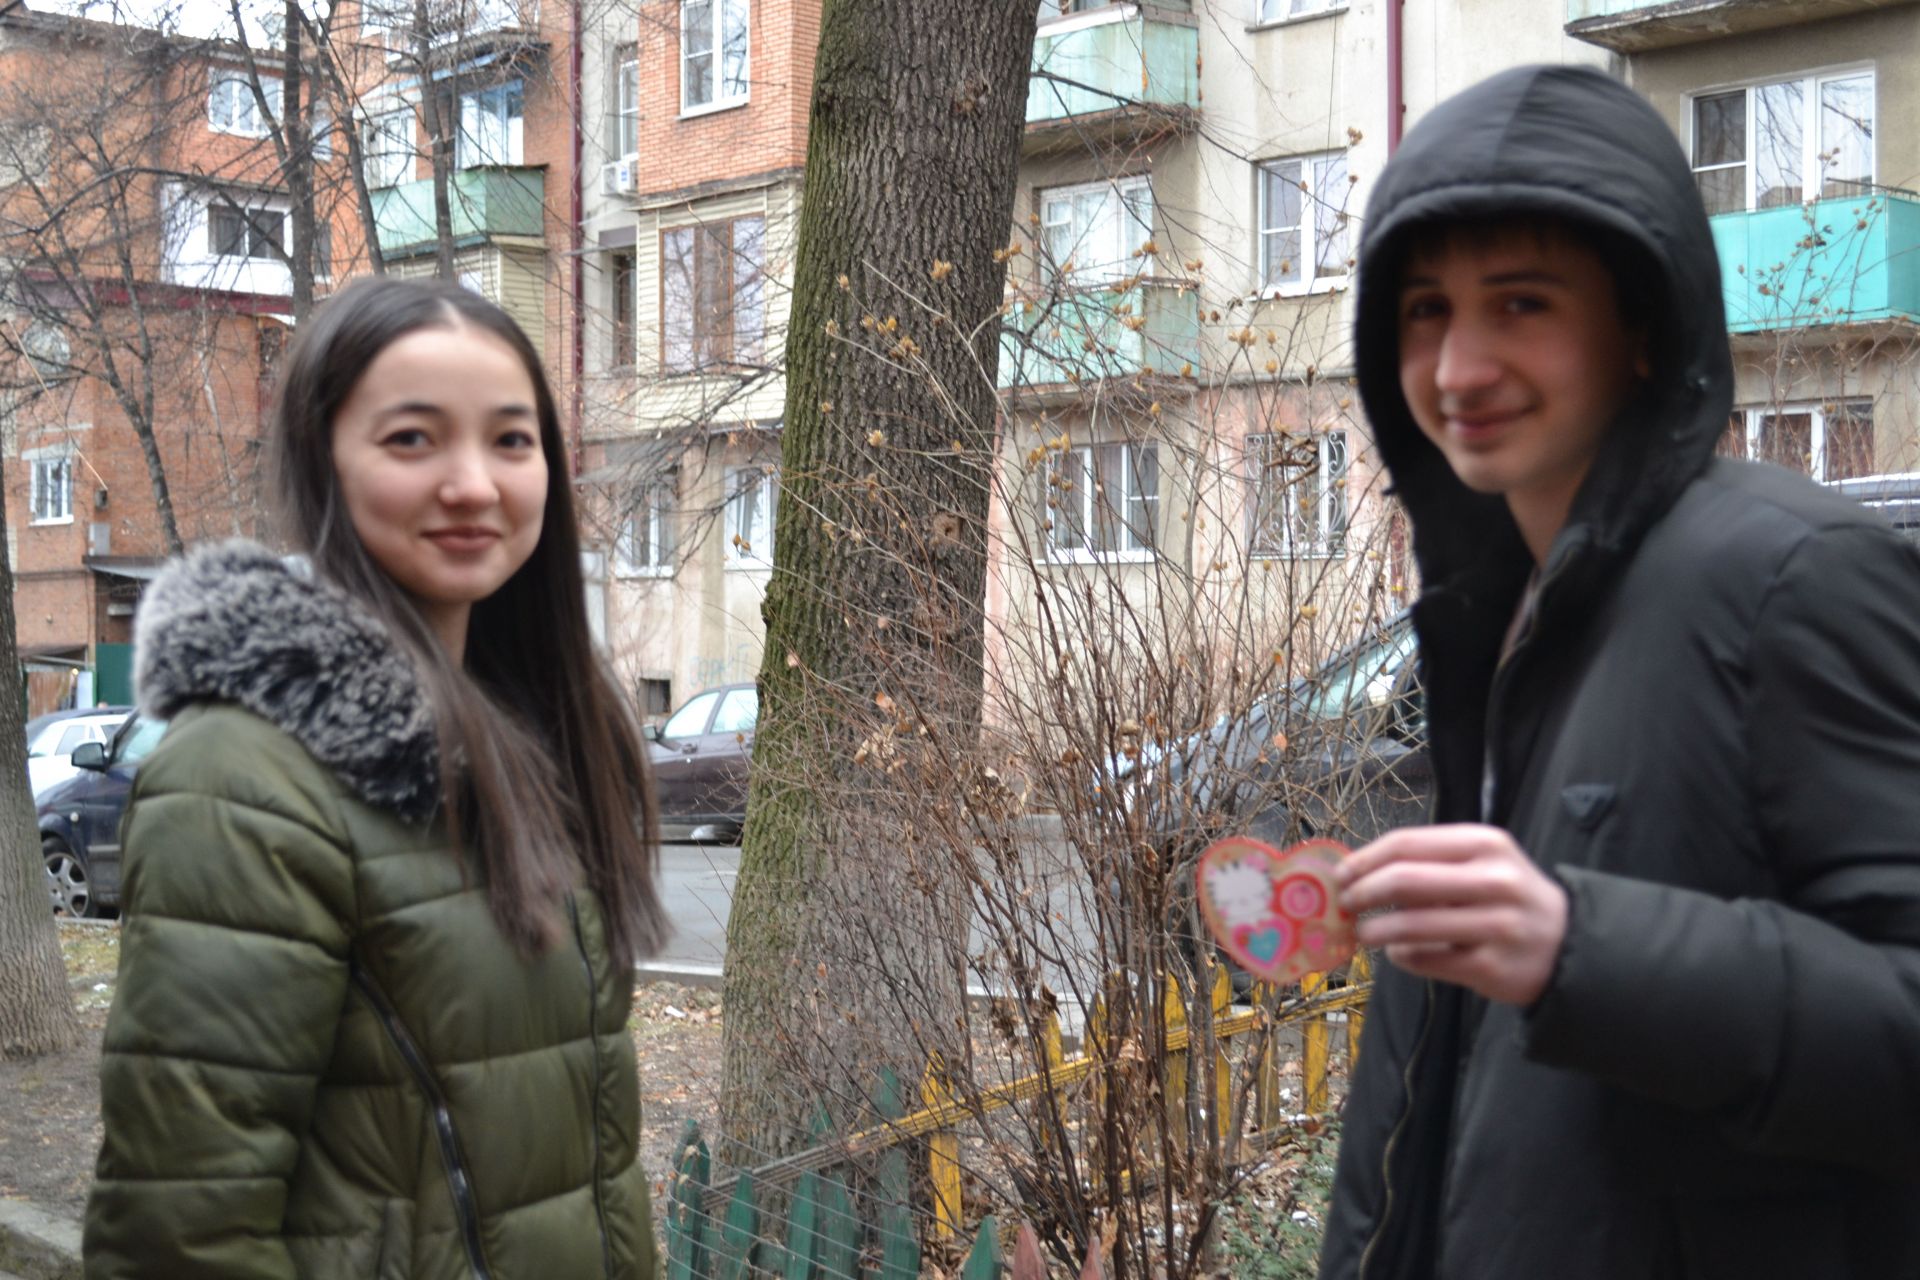 Студенты Владикавказского колледжа управления поздравляли прохожих открытками с Днем Святого Валентина